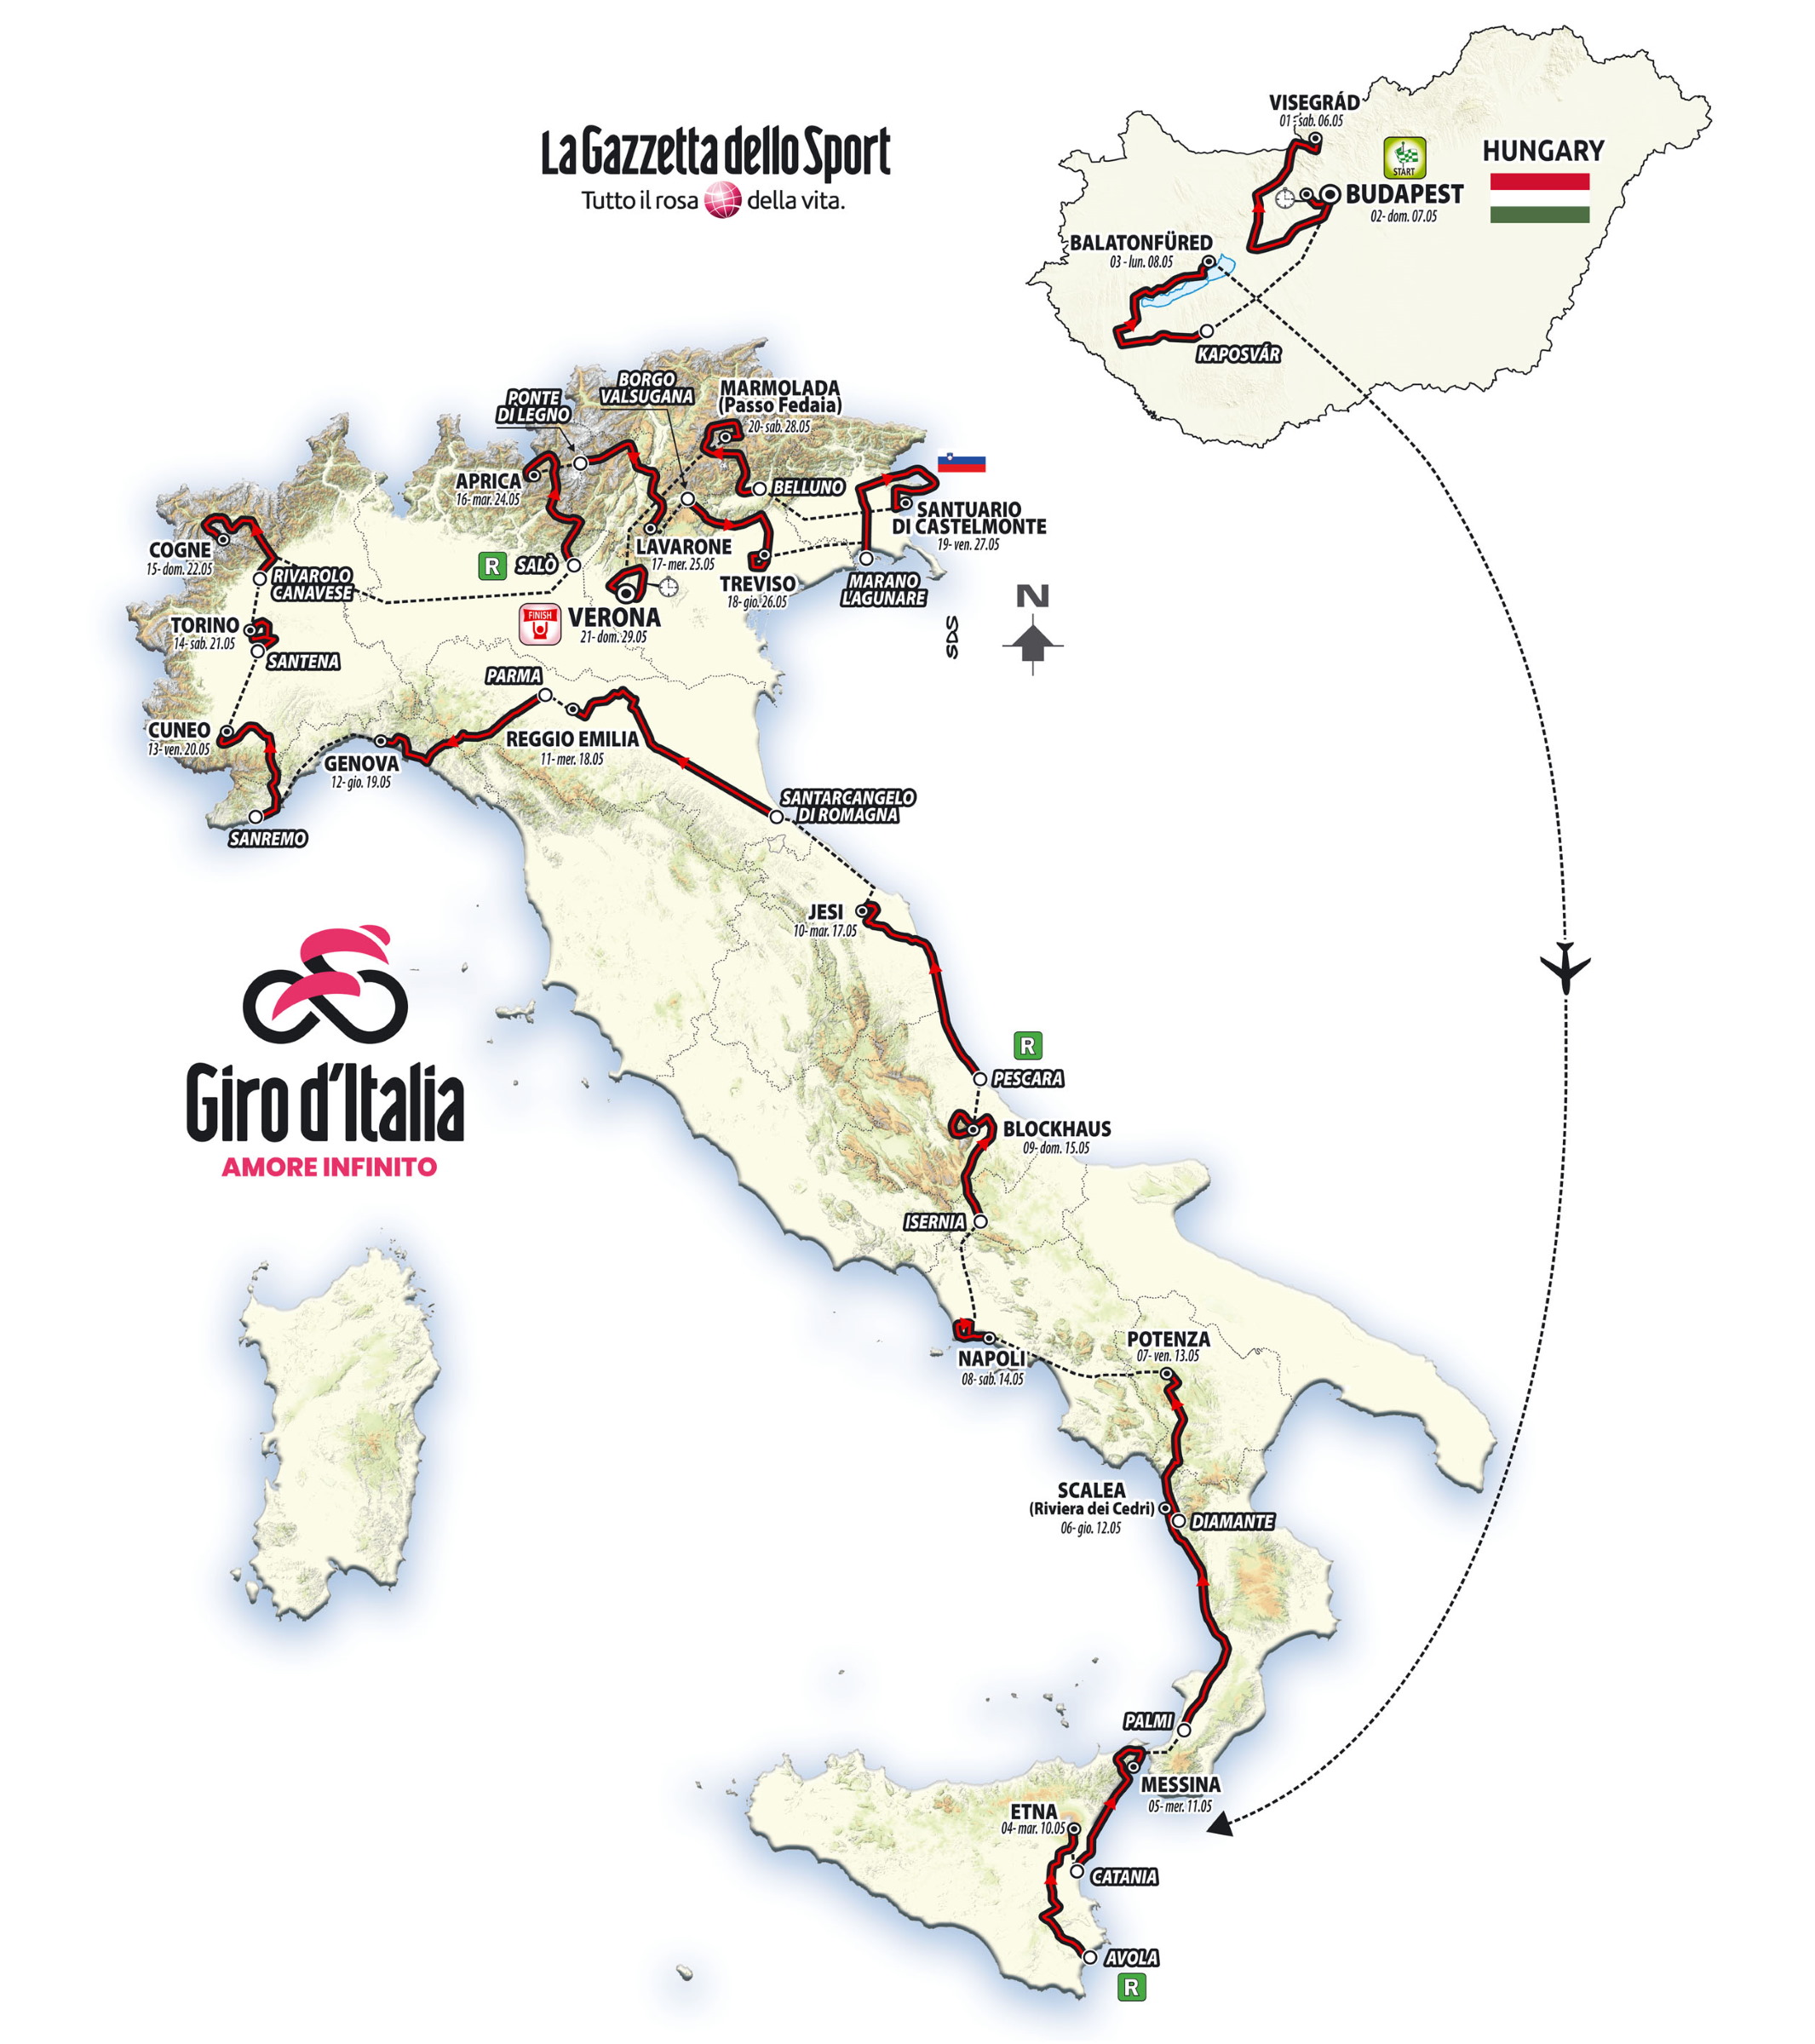 SpazioCiclismo - Percorso Giro d'Italia 2022, ecco tutte le tappe! (Altimetrie e Planimetrie)